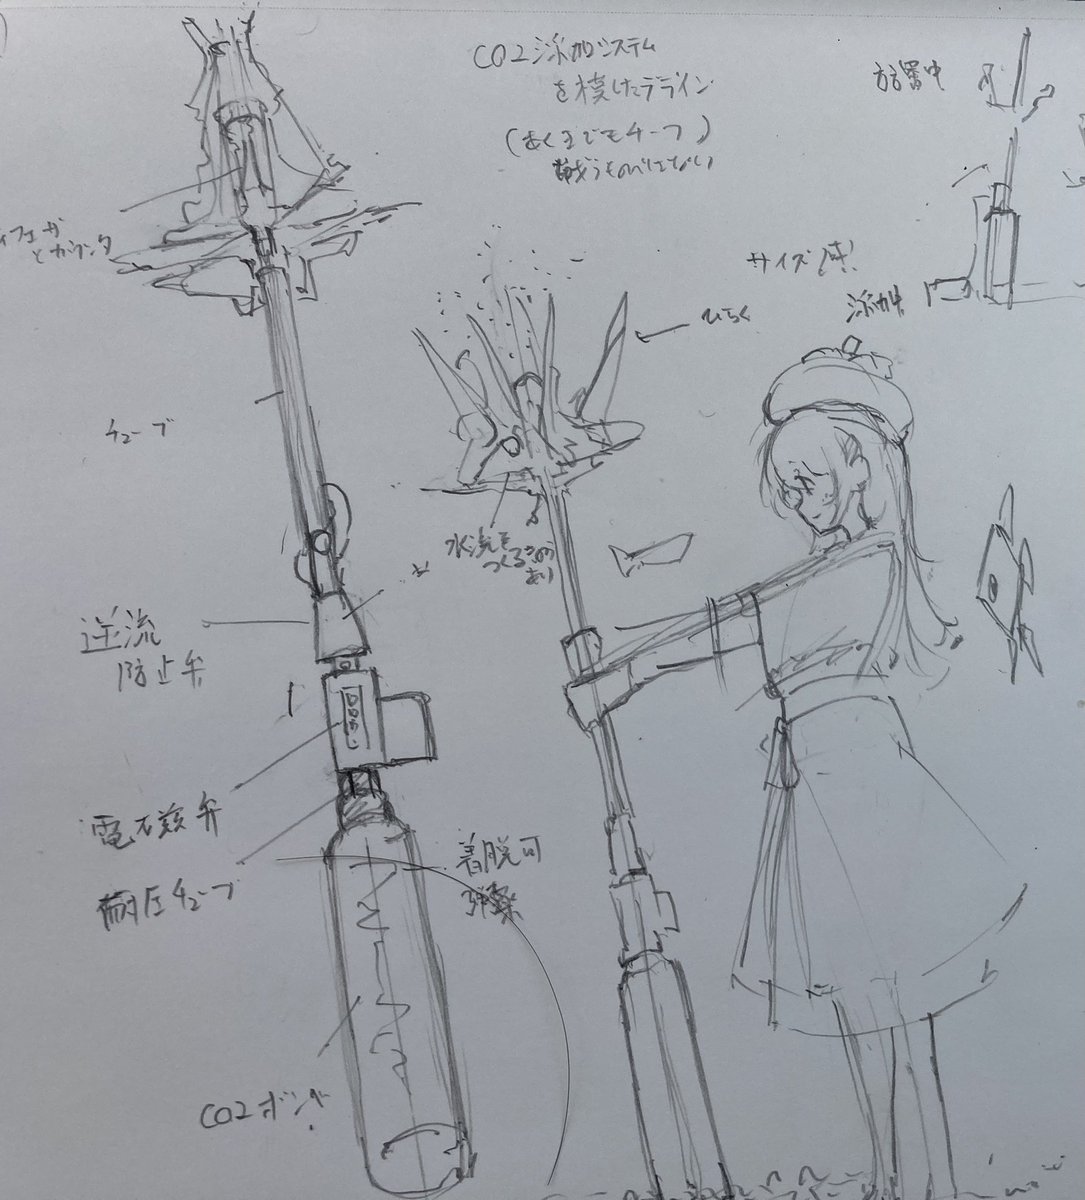 魔法少女リリカルなのはの杖デザイン好きなんですよね。でも僕に描けるかな。

CO2添加システムを杖に落とし込んでみたら楽しそうという思いつき。 